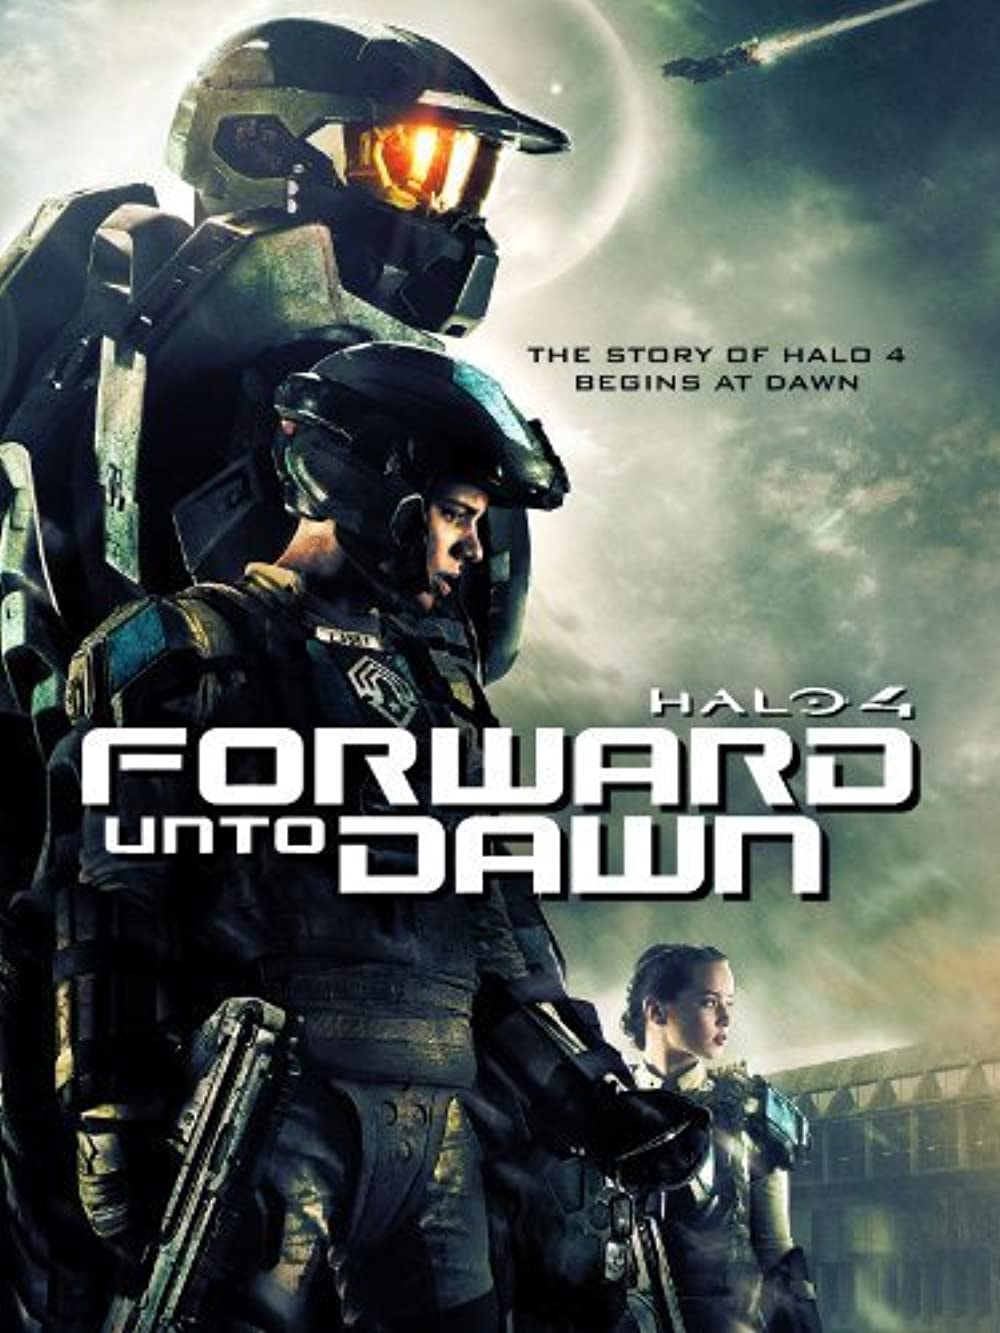 ดูหนังออนไลน์ Halo 4 Forward Unto Dawn (2012) เฮโล 4 หน่วยฝึกรบมหากาฬ หนังมาสเตอร์ หนังเต็มเรื่อง ดูหนังฟรีออนไลน์ ดูหนังออนไลน์ หนังออนไลน์ ดูหนังใหม่ หนังพากย์ไทย หนังซับไทย ดูฟรีHD